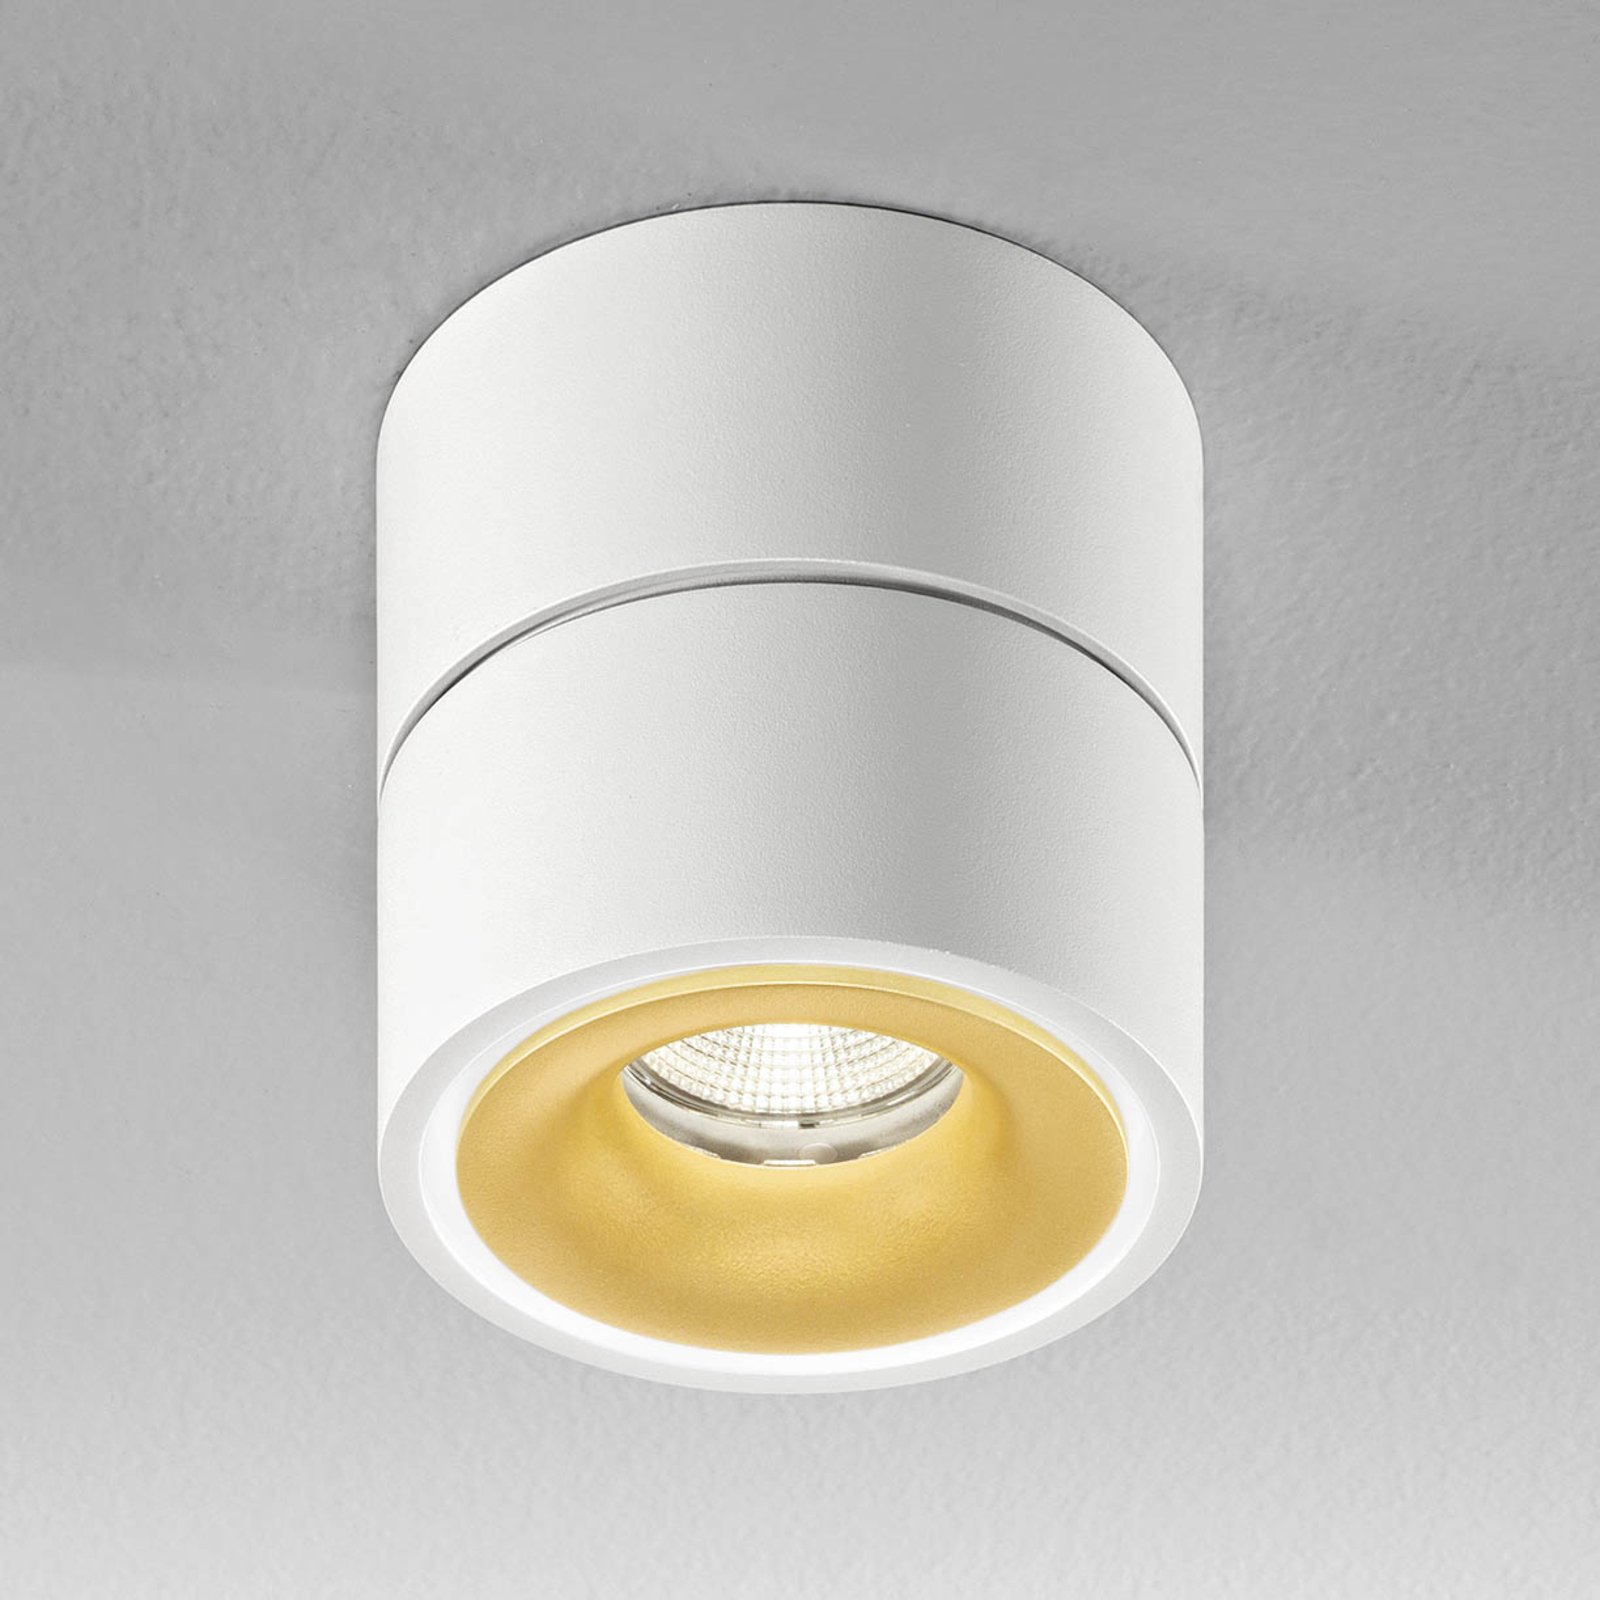 Egger Clippo S foco de techo LED, blanco-oro